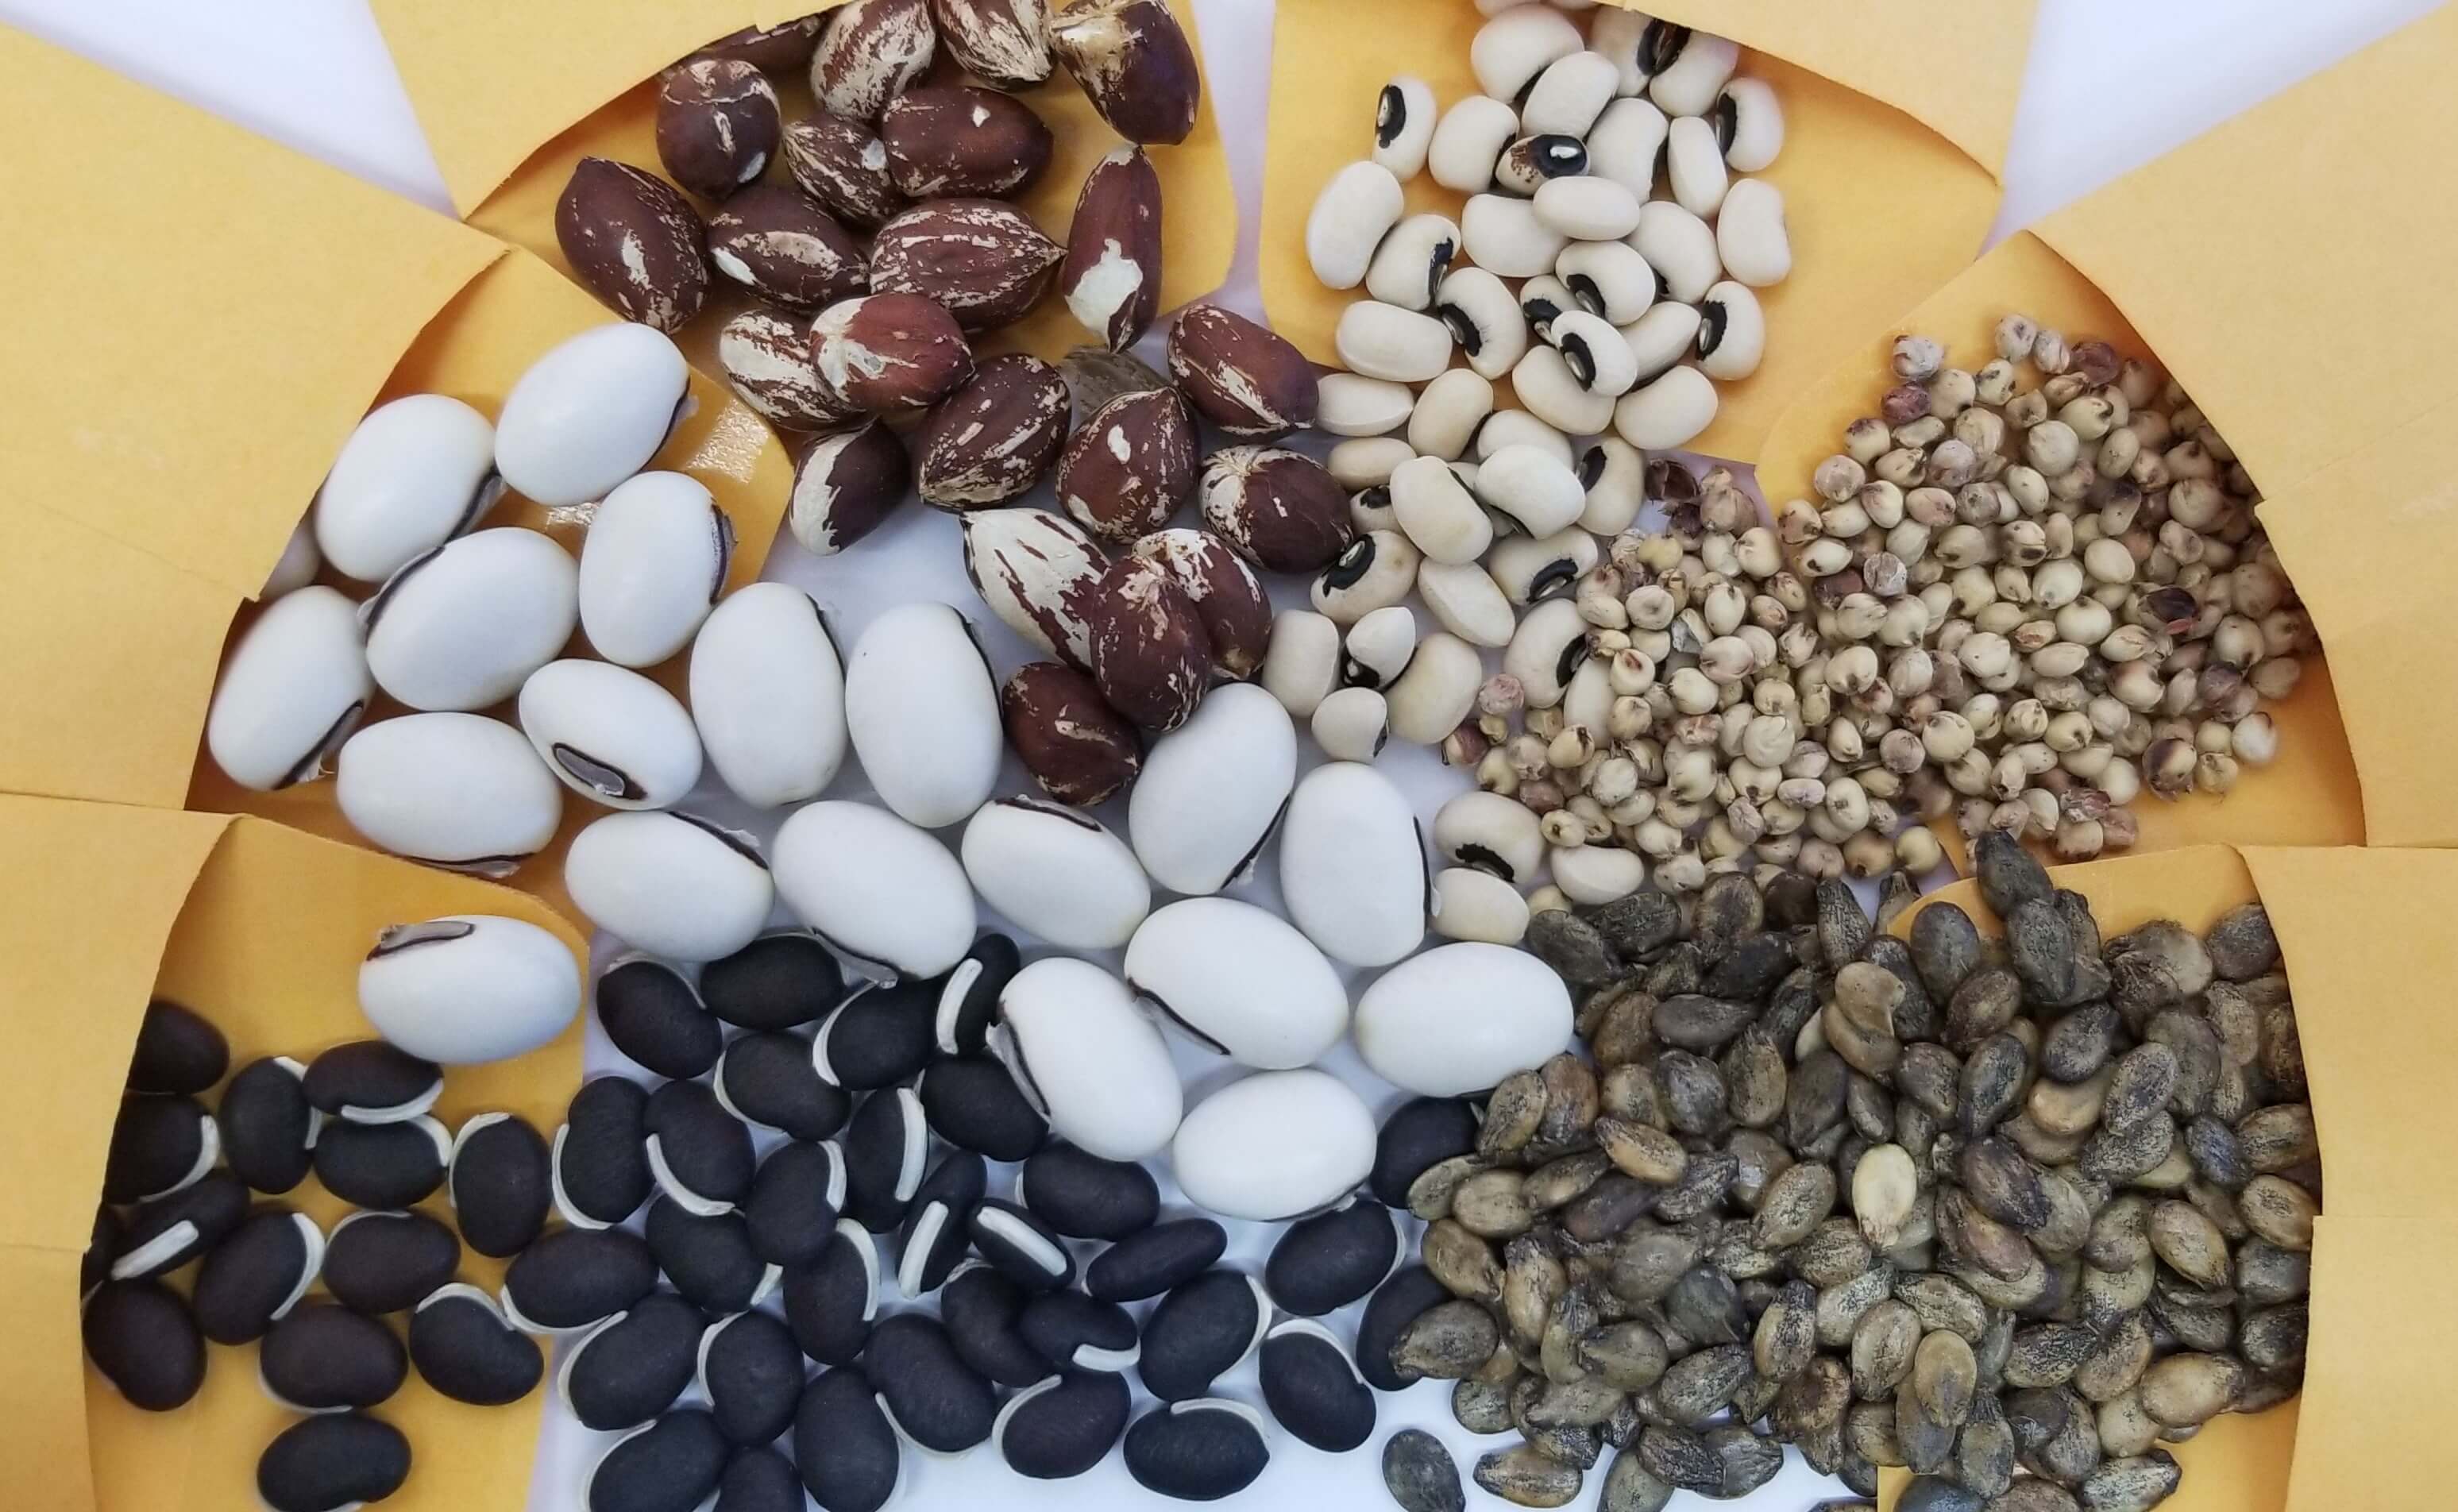 Des graines de différentes couleurs, formes et tailles provenant de plusieurs paquets de graines se répandent ensemble :